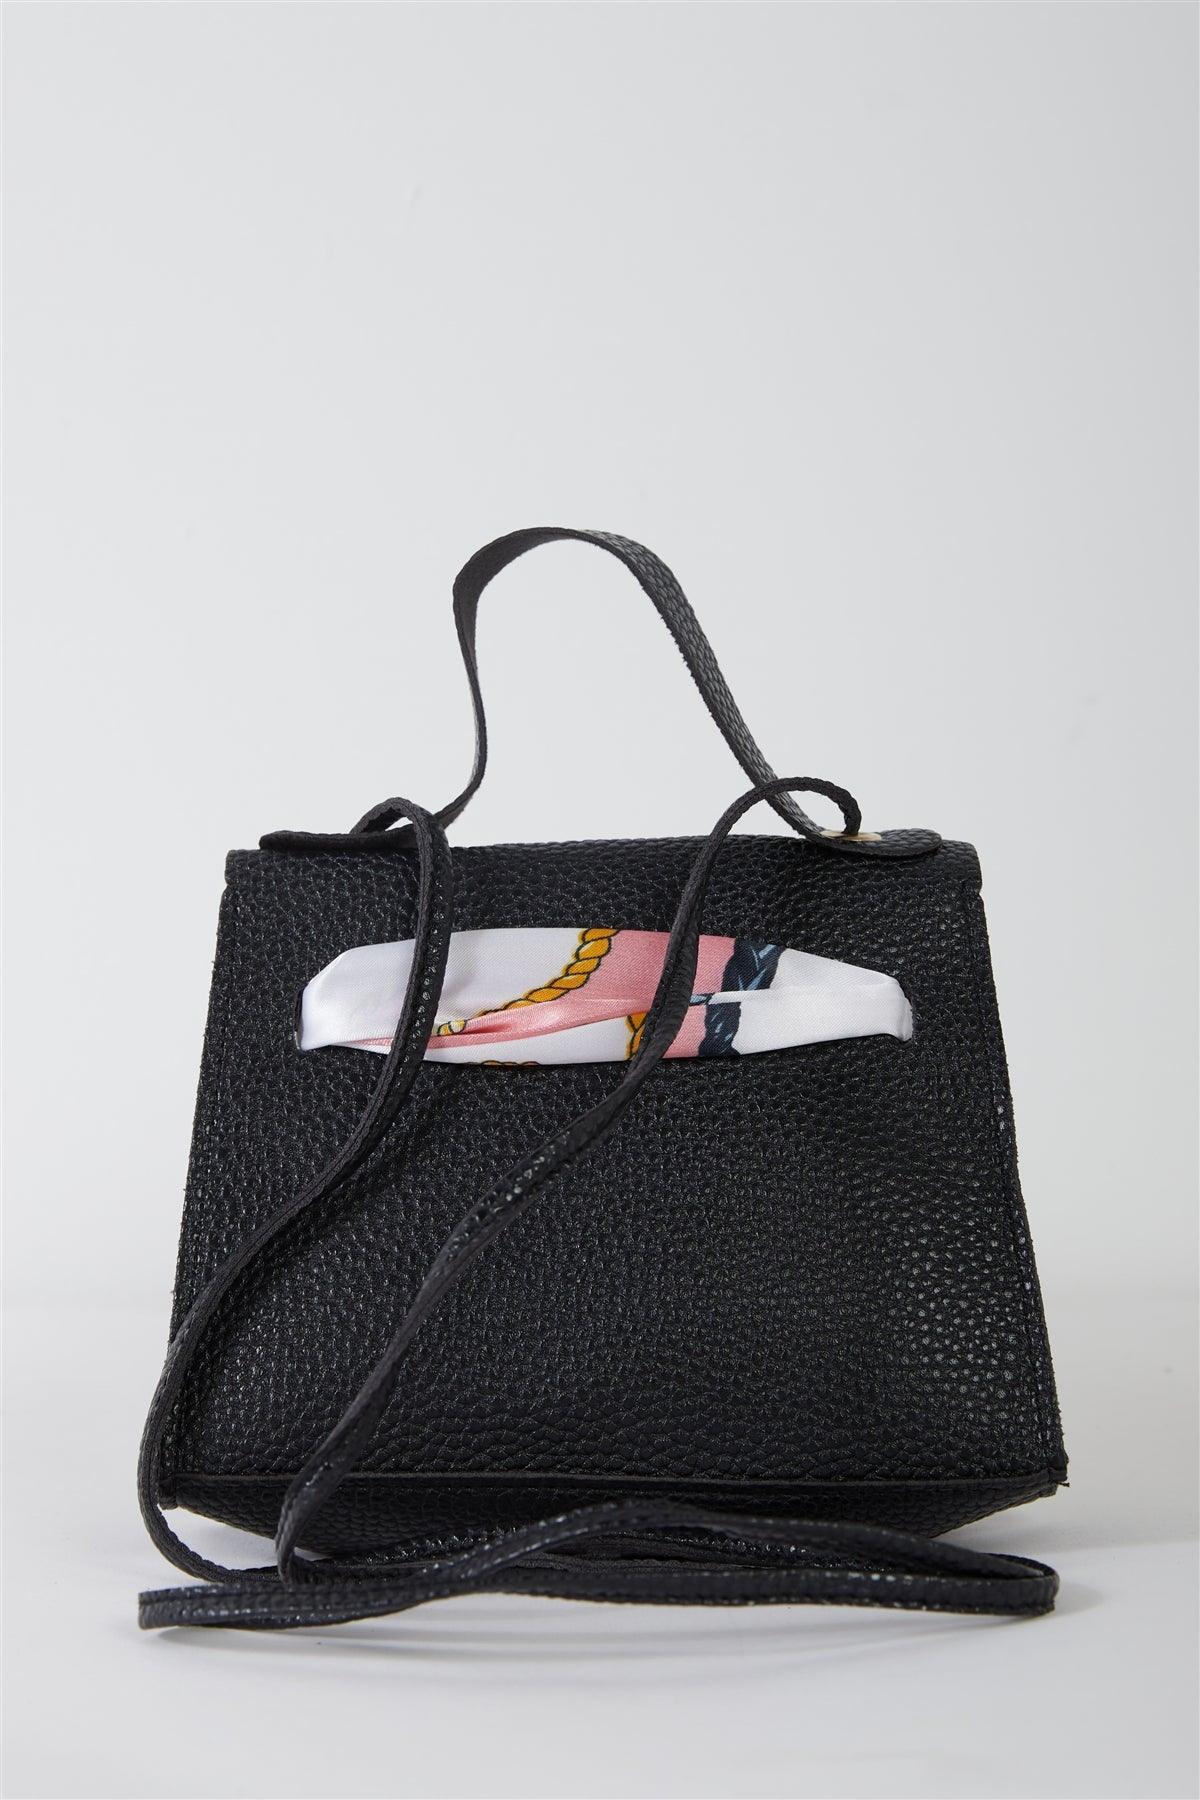 Textured Pleather Twilly Scarf Mini Satchel Handbag - Tasha Apparel Wholesale